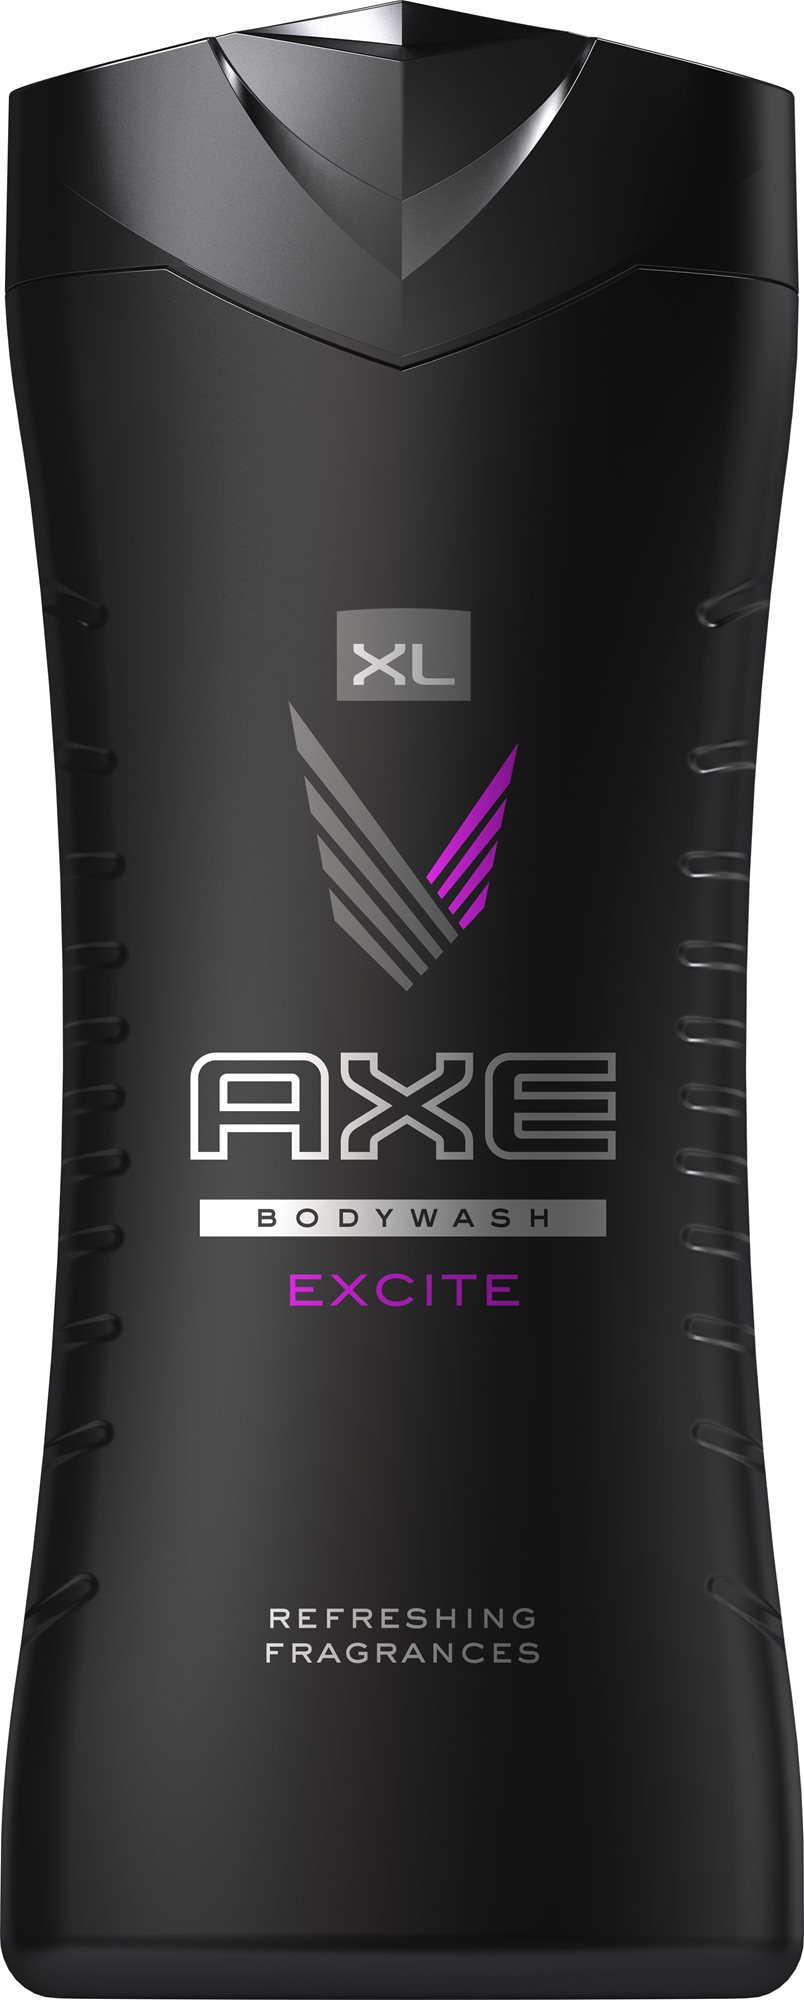 Tusfürdő Axe Excite XL Bodywash 400 ml